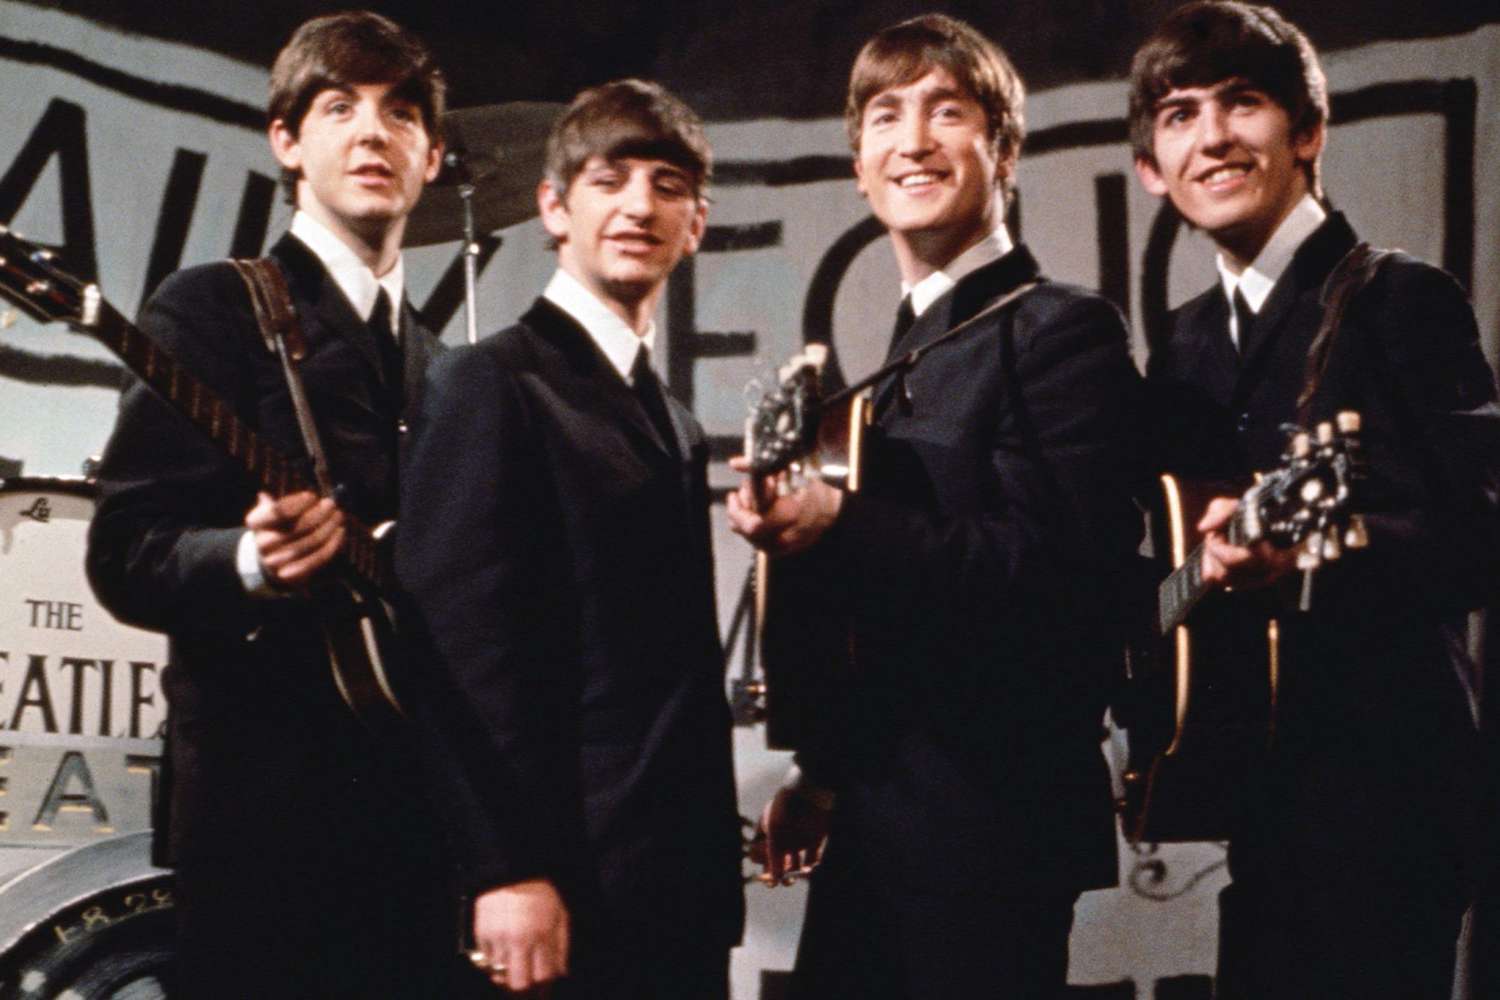 Happy Beatles